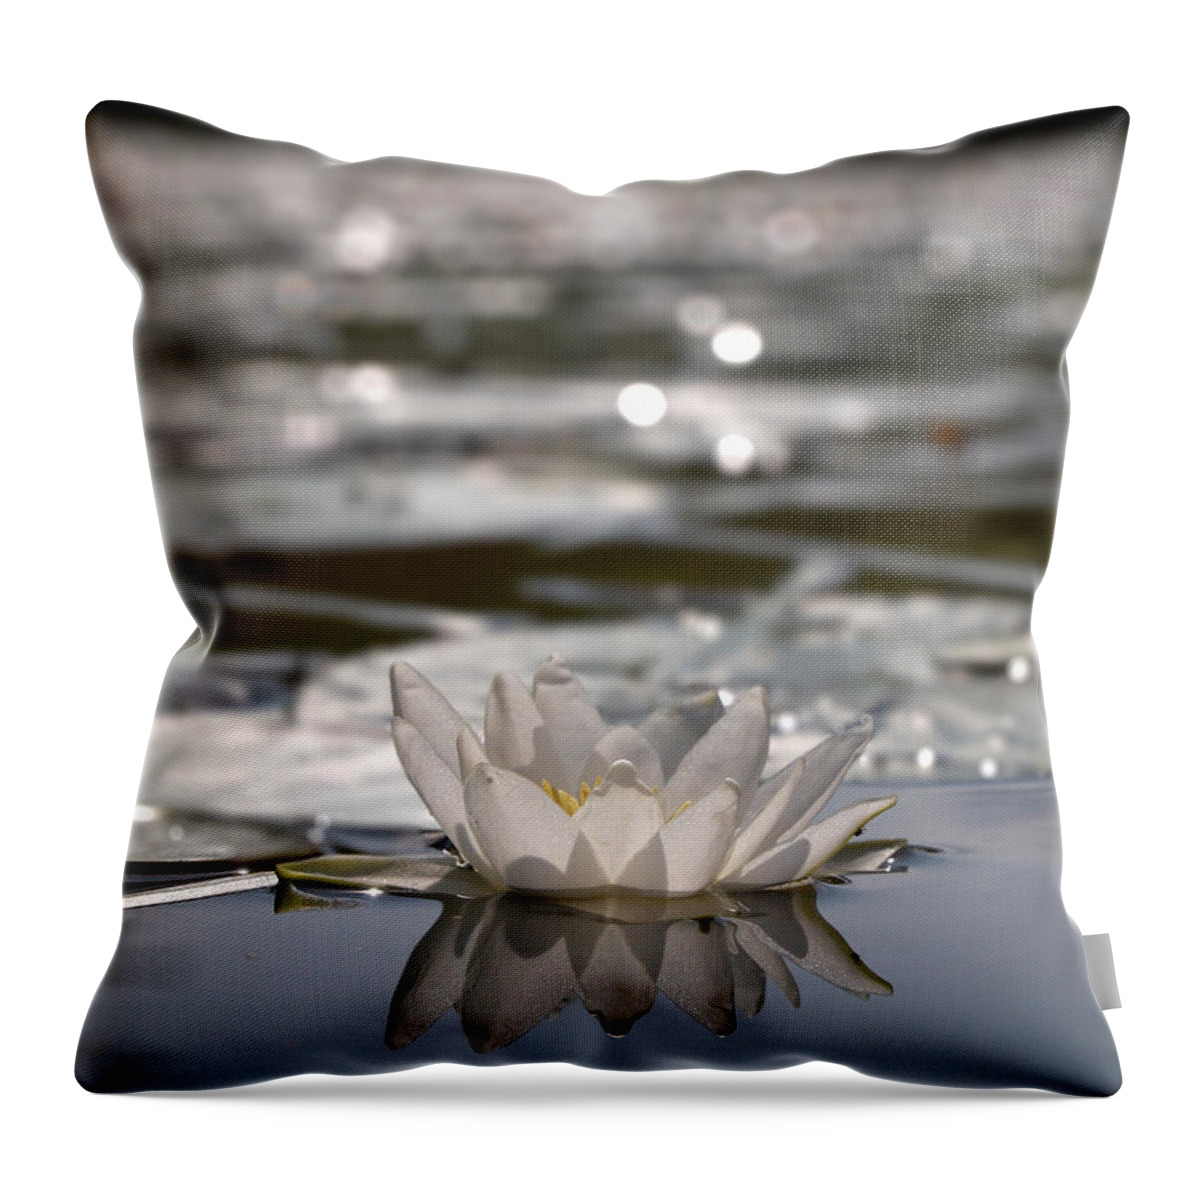 Lehtokukka Throw Pillow featuring the photograph White waterlily 3 by Jouko Lehto